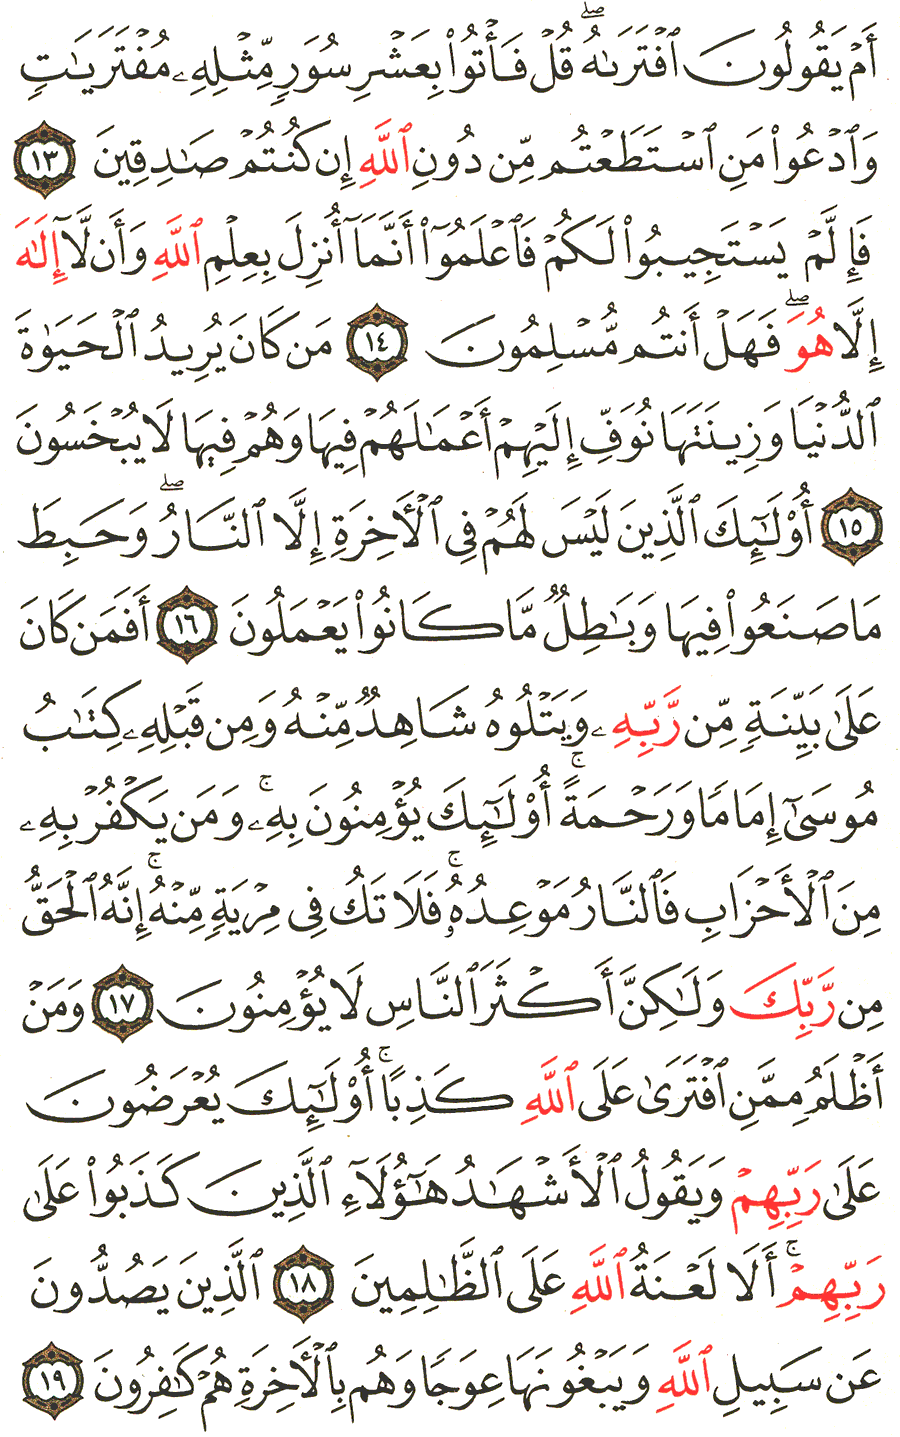 الصفحة 223 من القرآن الكريم